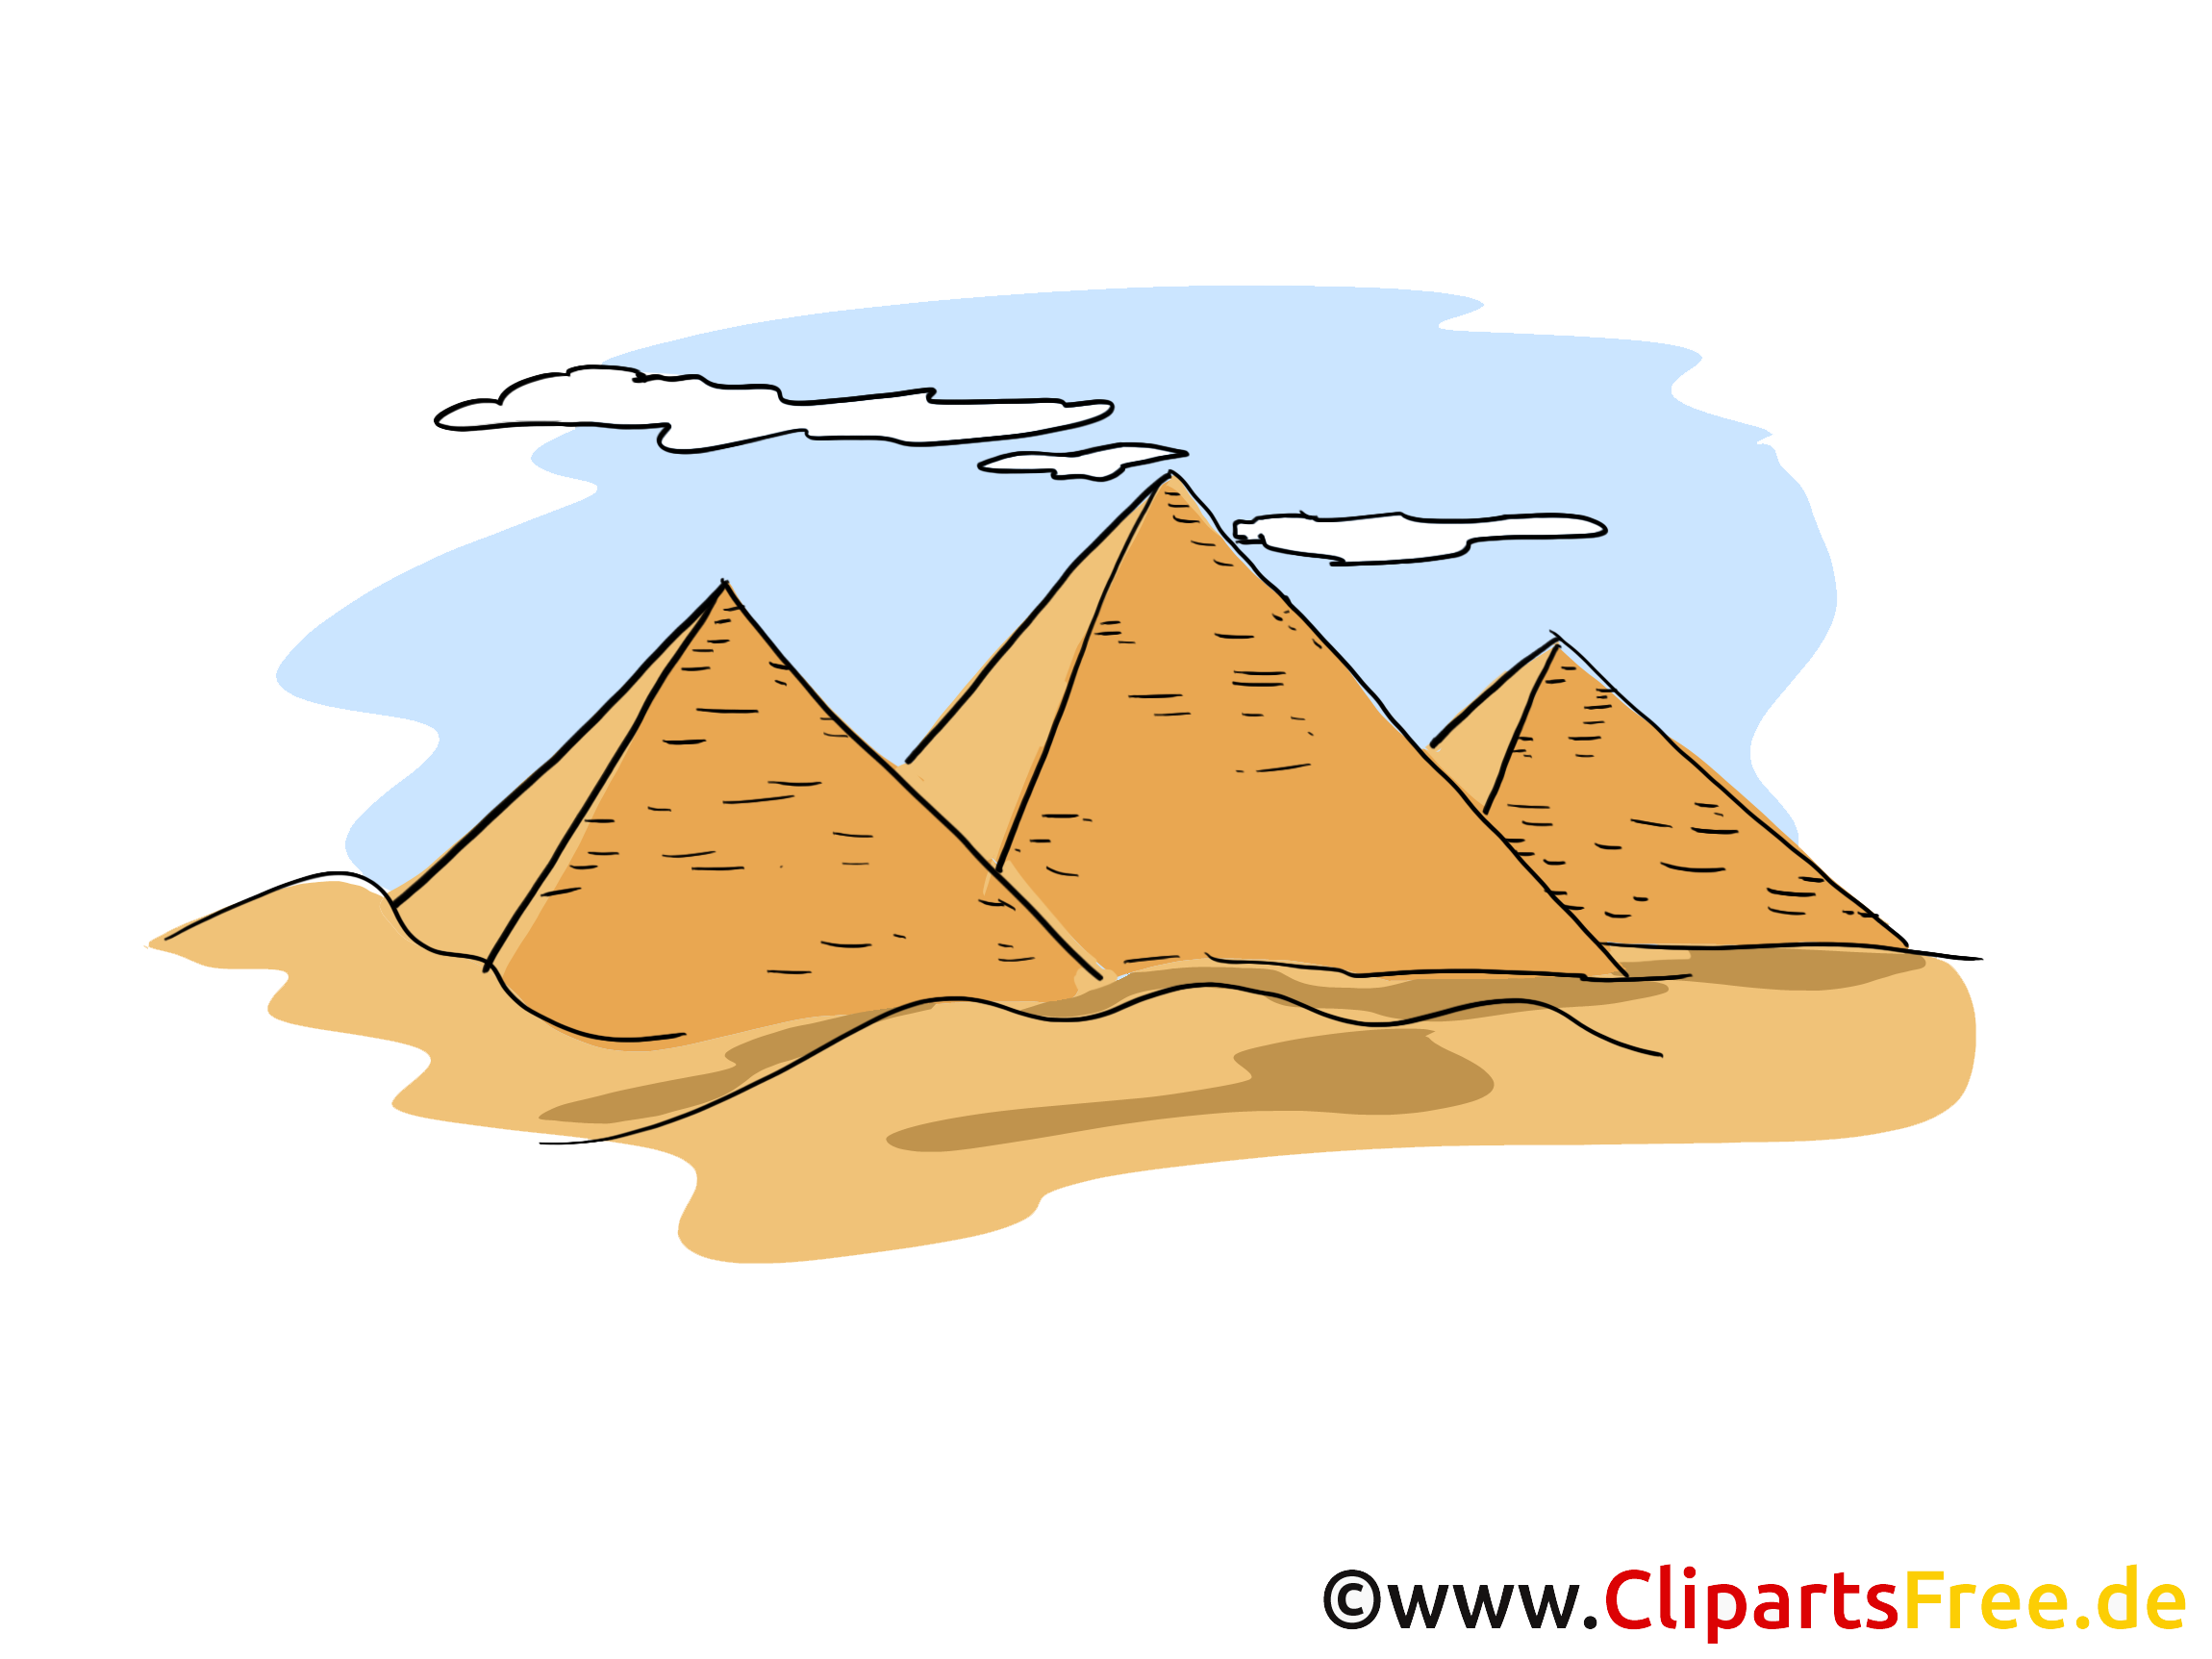 Egypte dessin à télécharger - Pyramides images